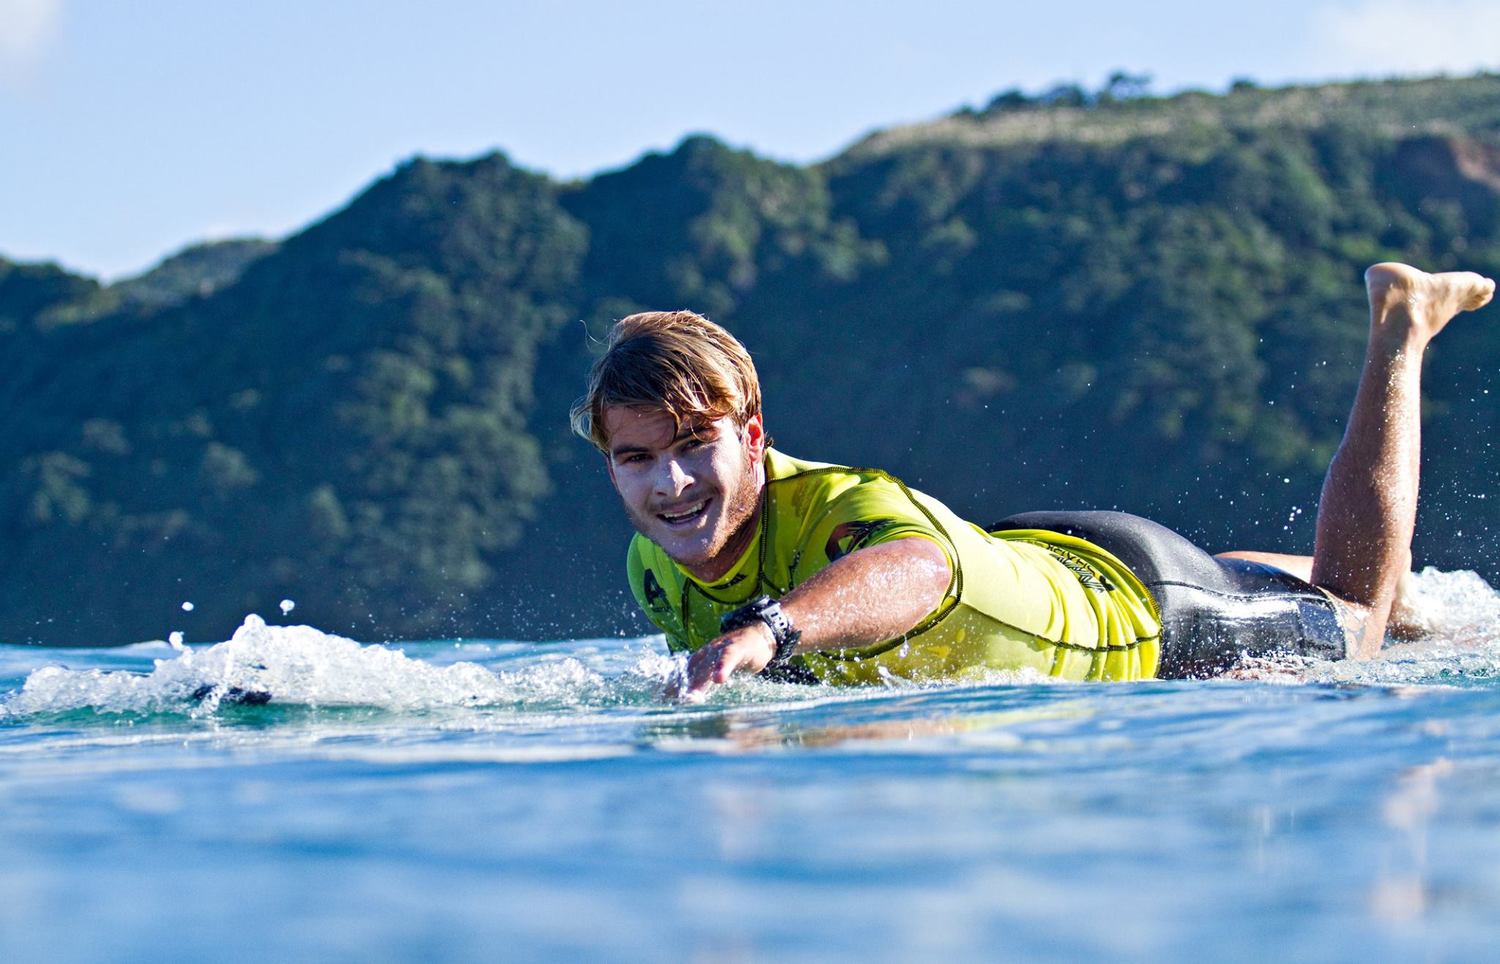 Zane Kekoa Schweitzer paddling on his board in Maui